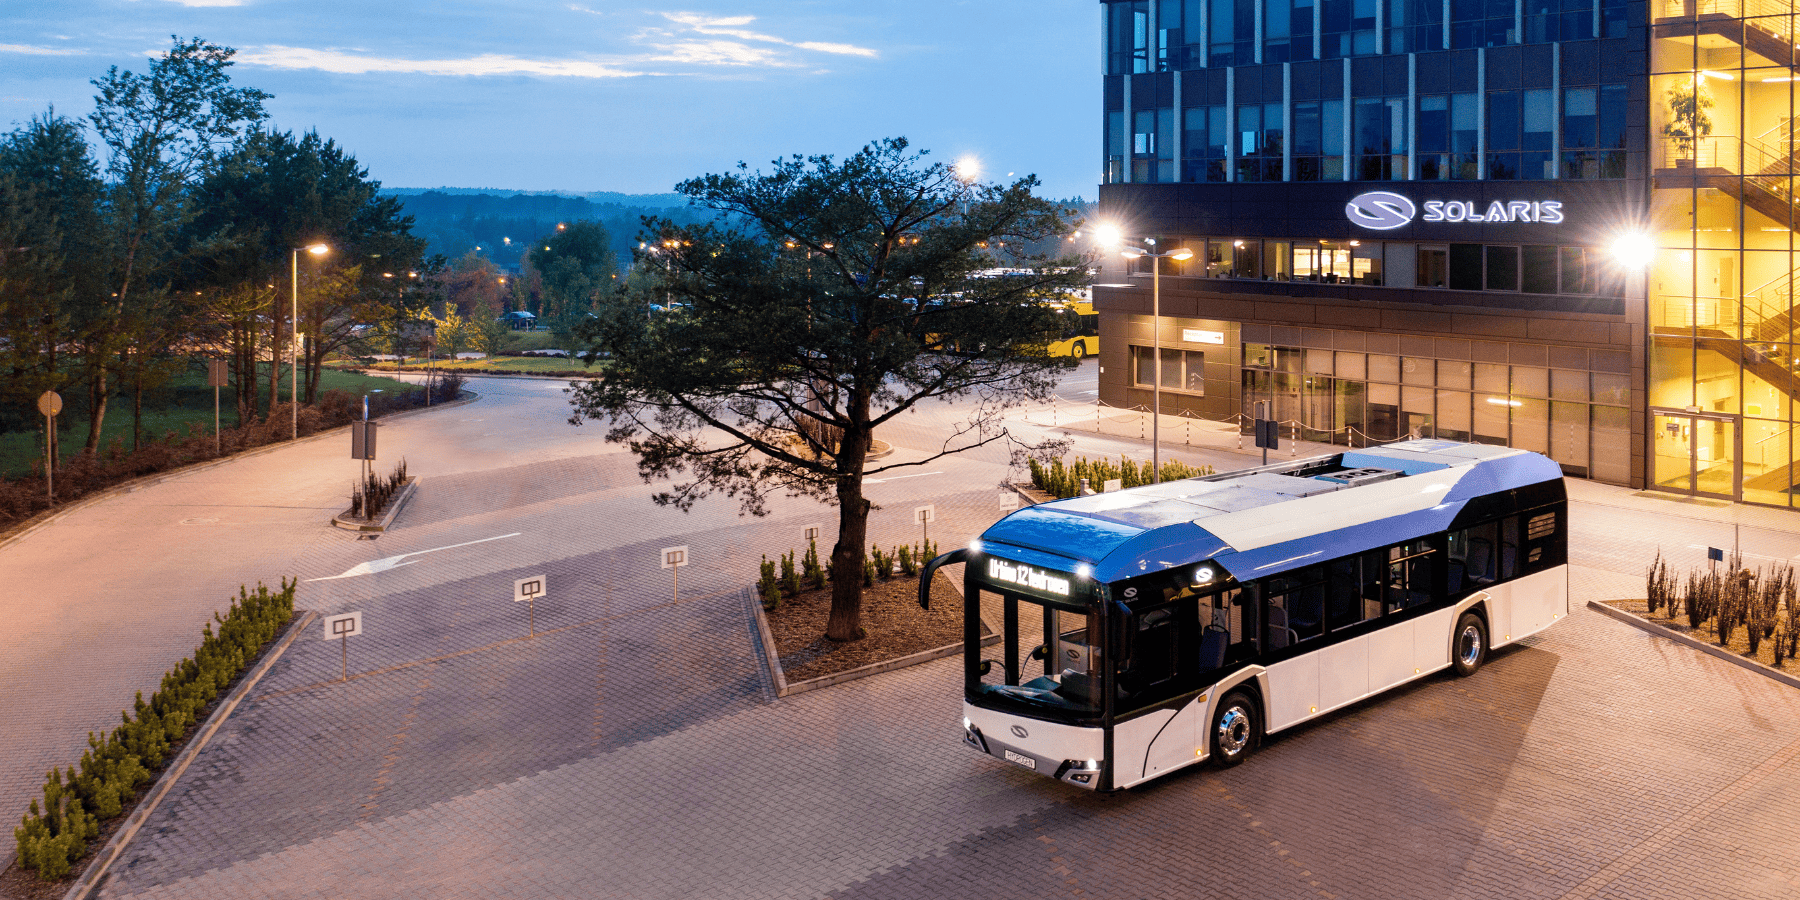 19 polskich autobusów wodorowych trafi do niemieckiego miasta